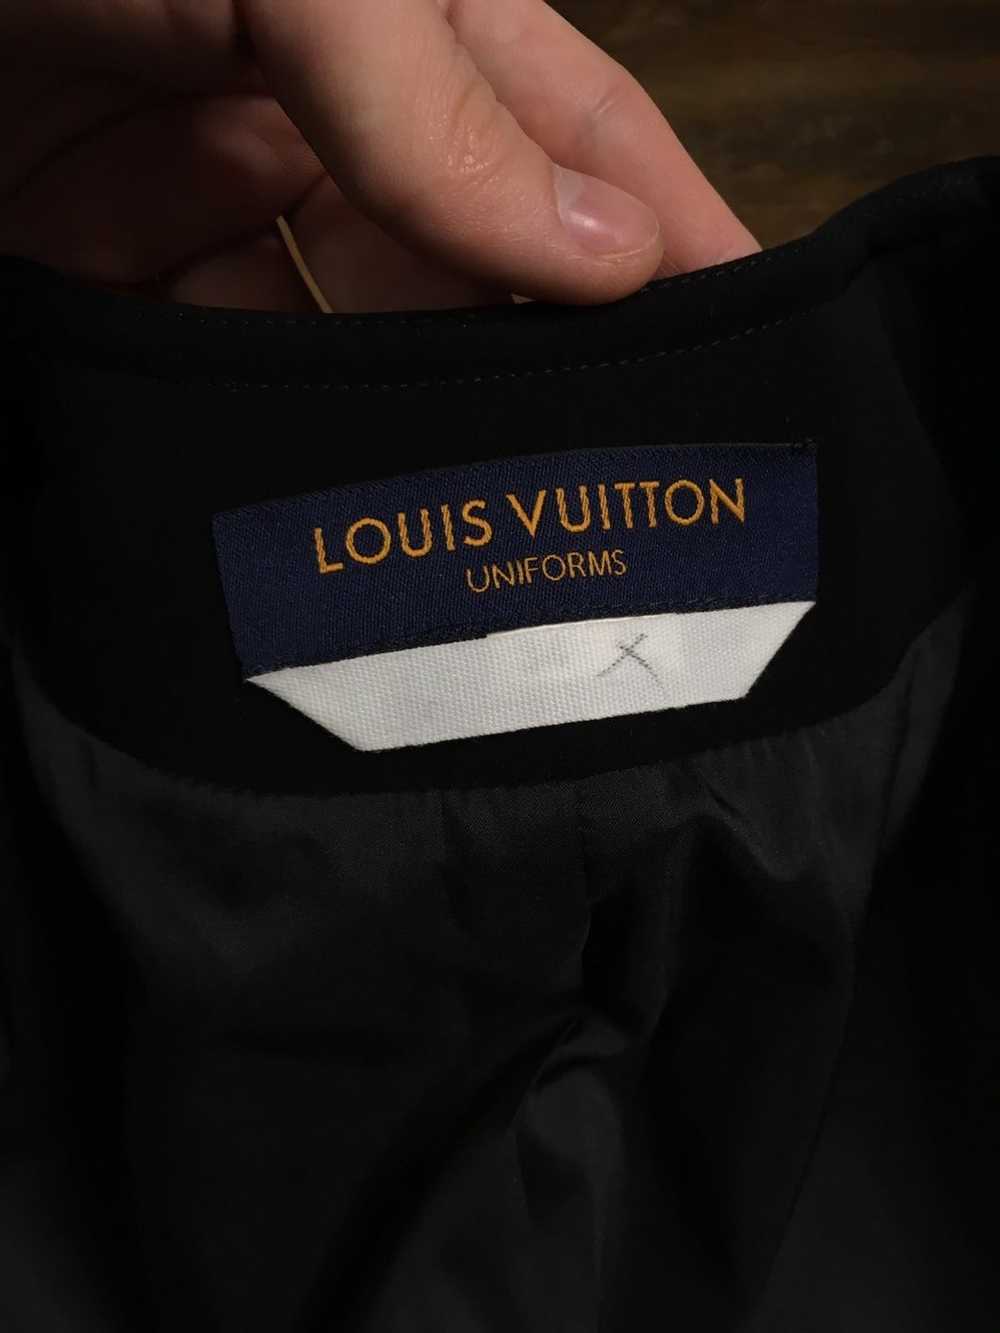 Louis Vuitton Louis Vuitton Uniform Blazer - image 6